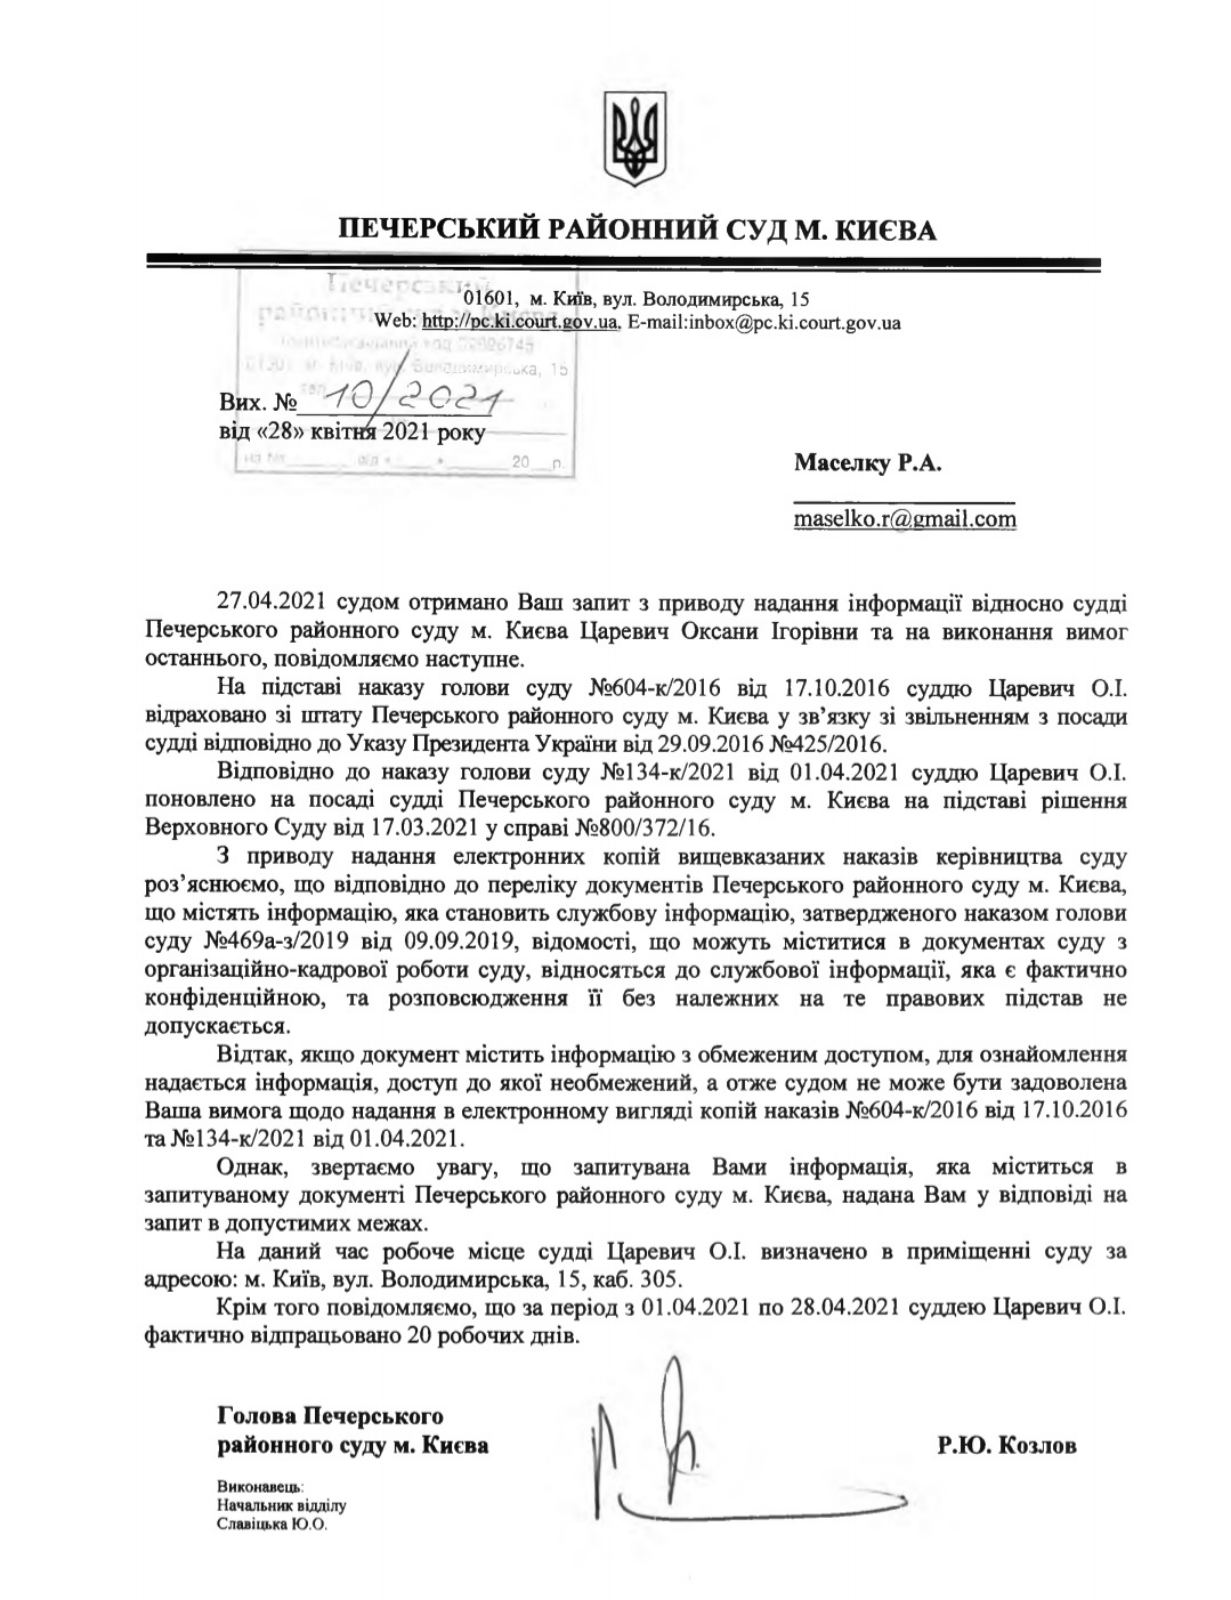 Скандальную "судью Майдана" Царевич восстановили в должности в Печерском суде: документ